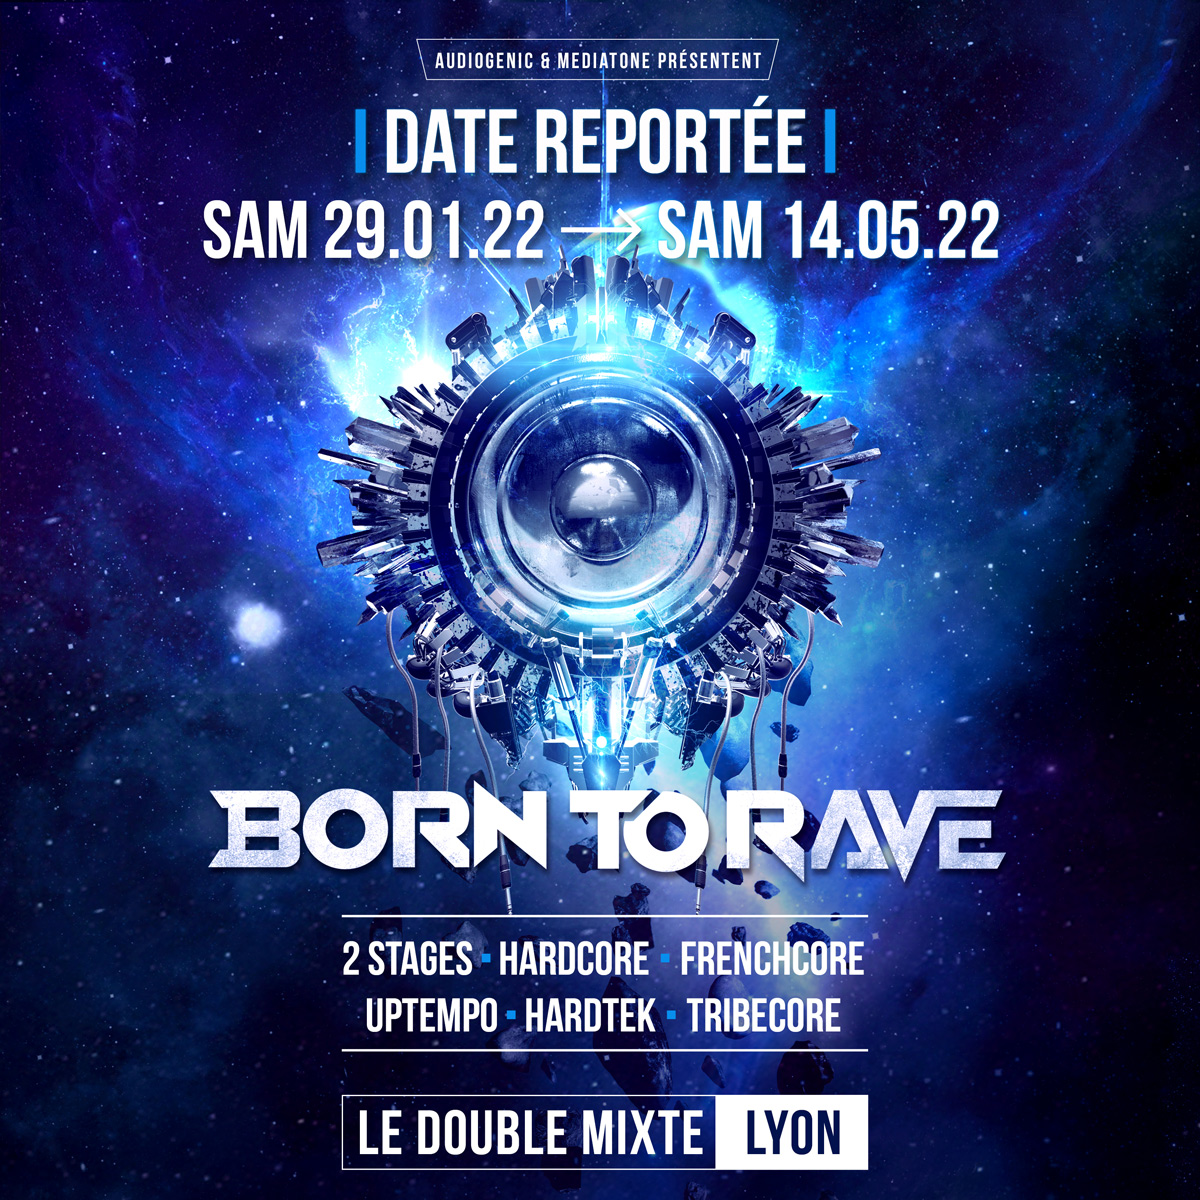 Lyon : Born to rave au Double Mixte 